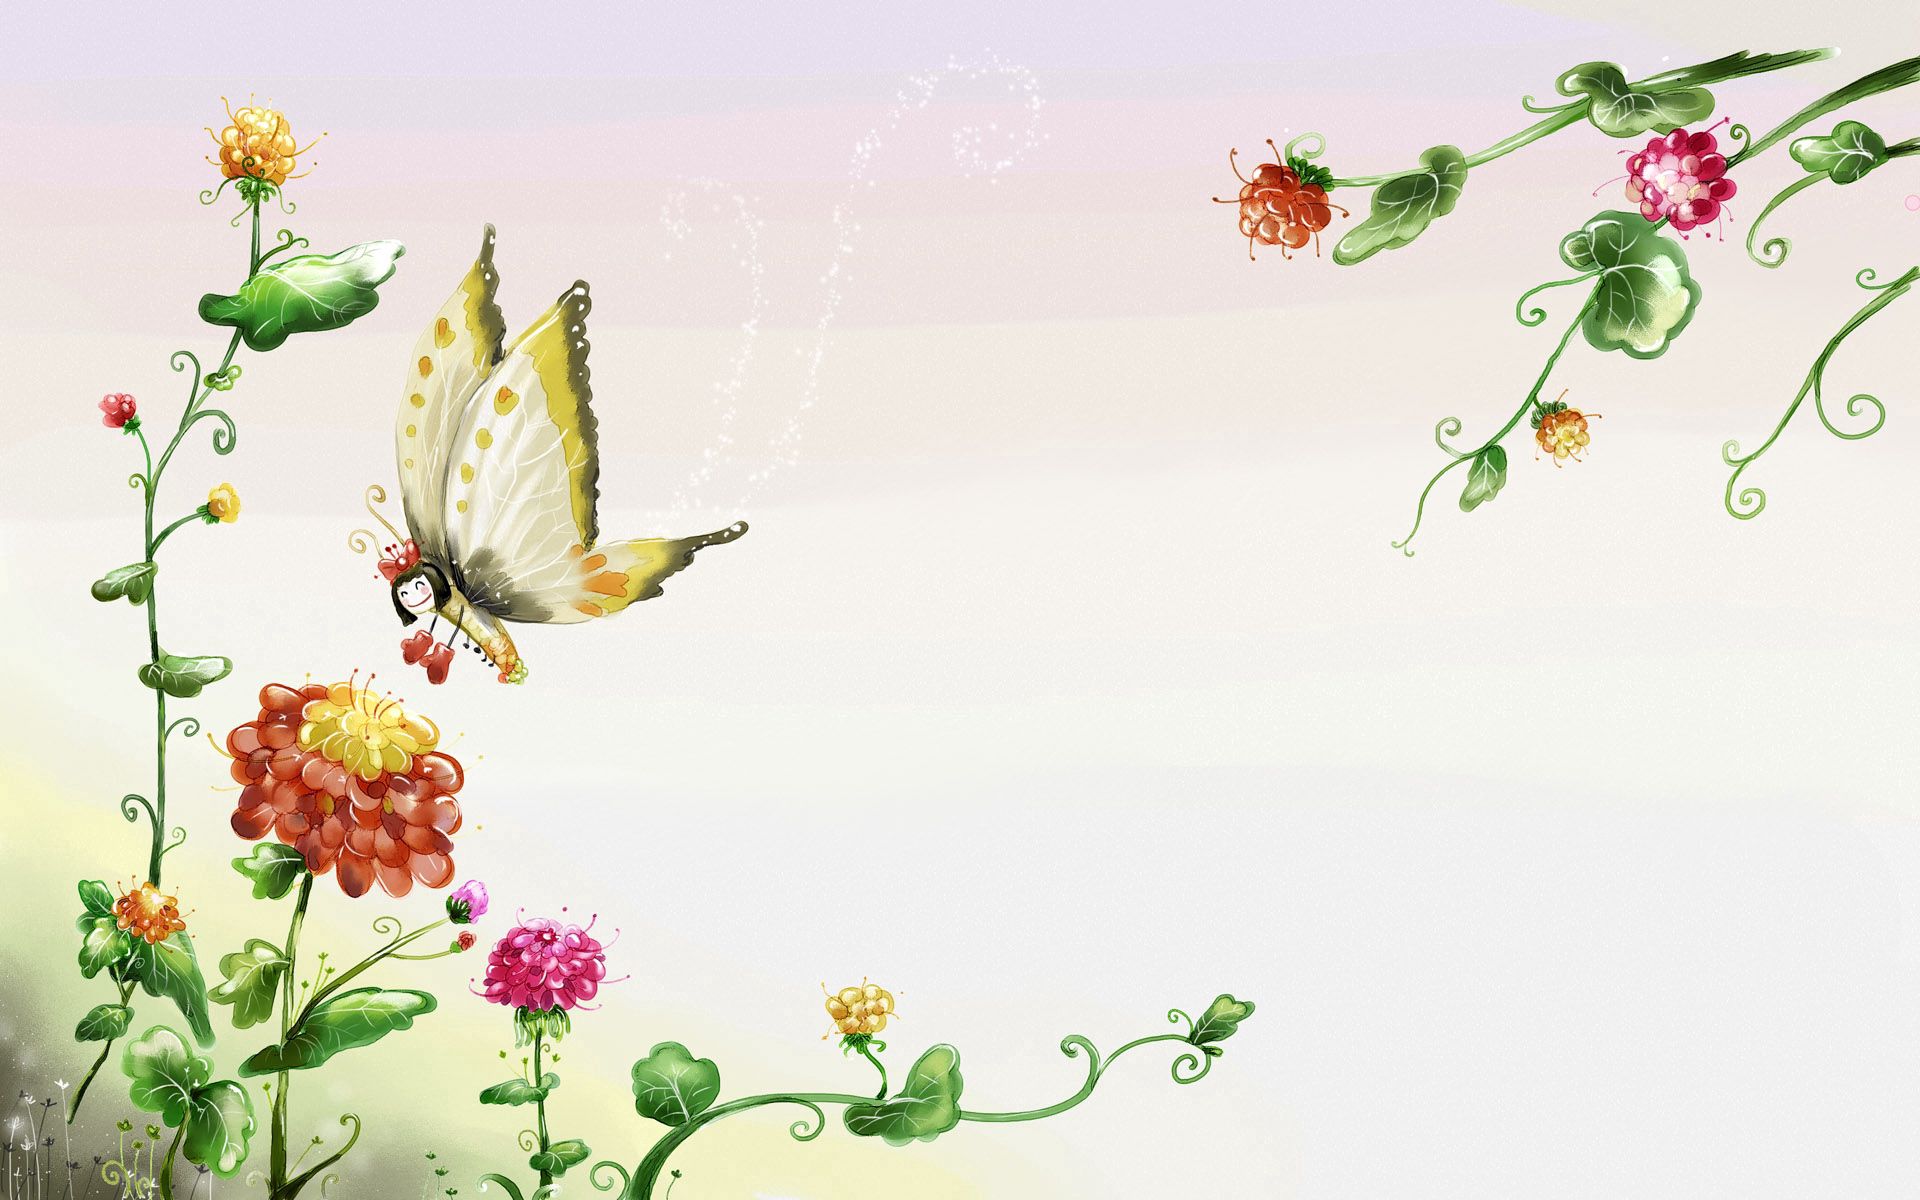 Скачать обои бесплатно Трава, Полет, Разное, Бабочка, Цветы картинка на рабочий стол ПК